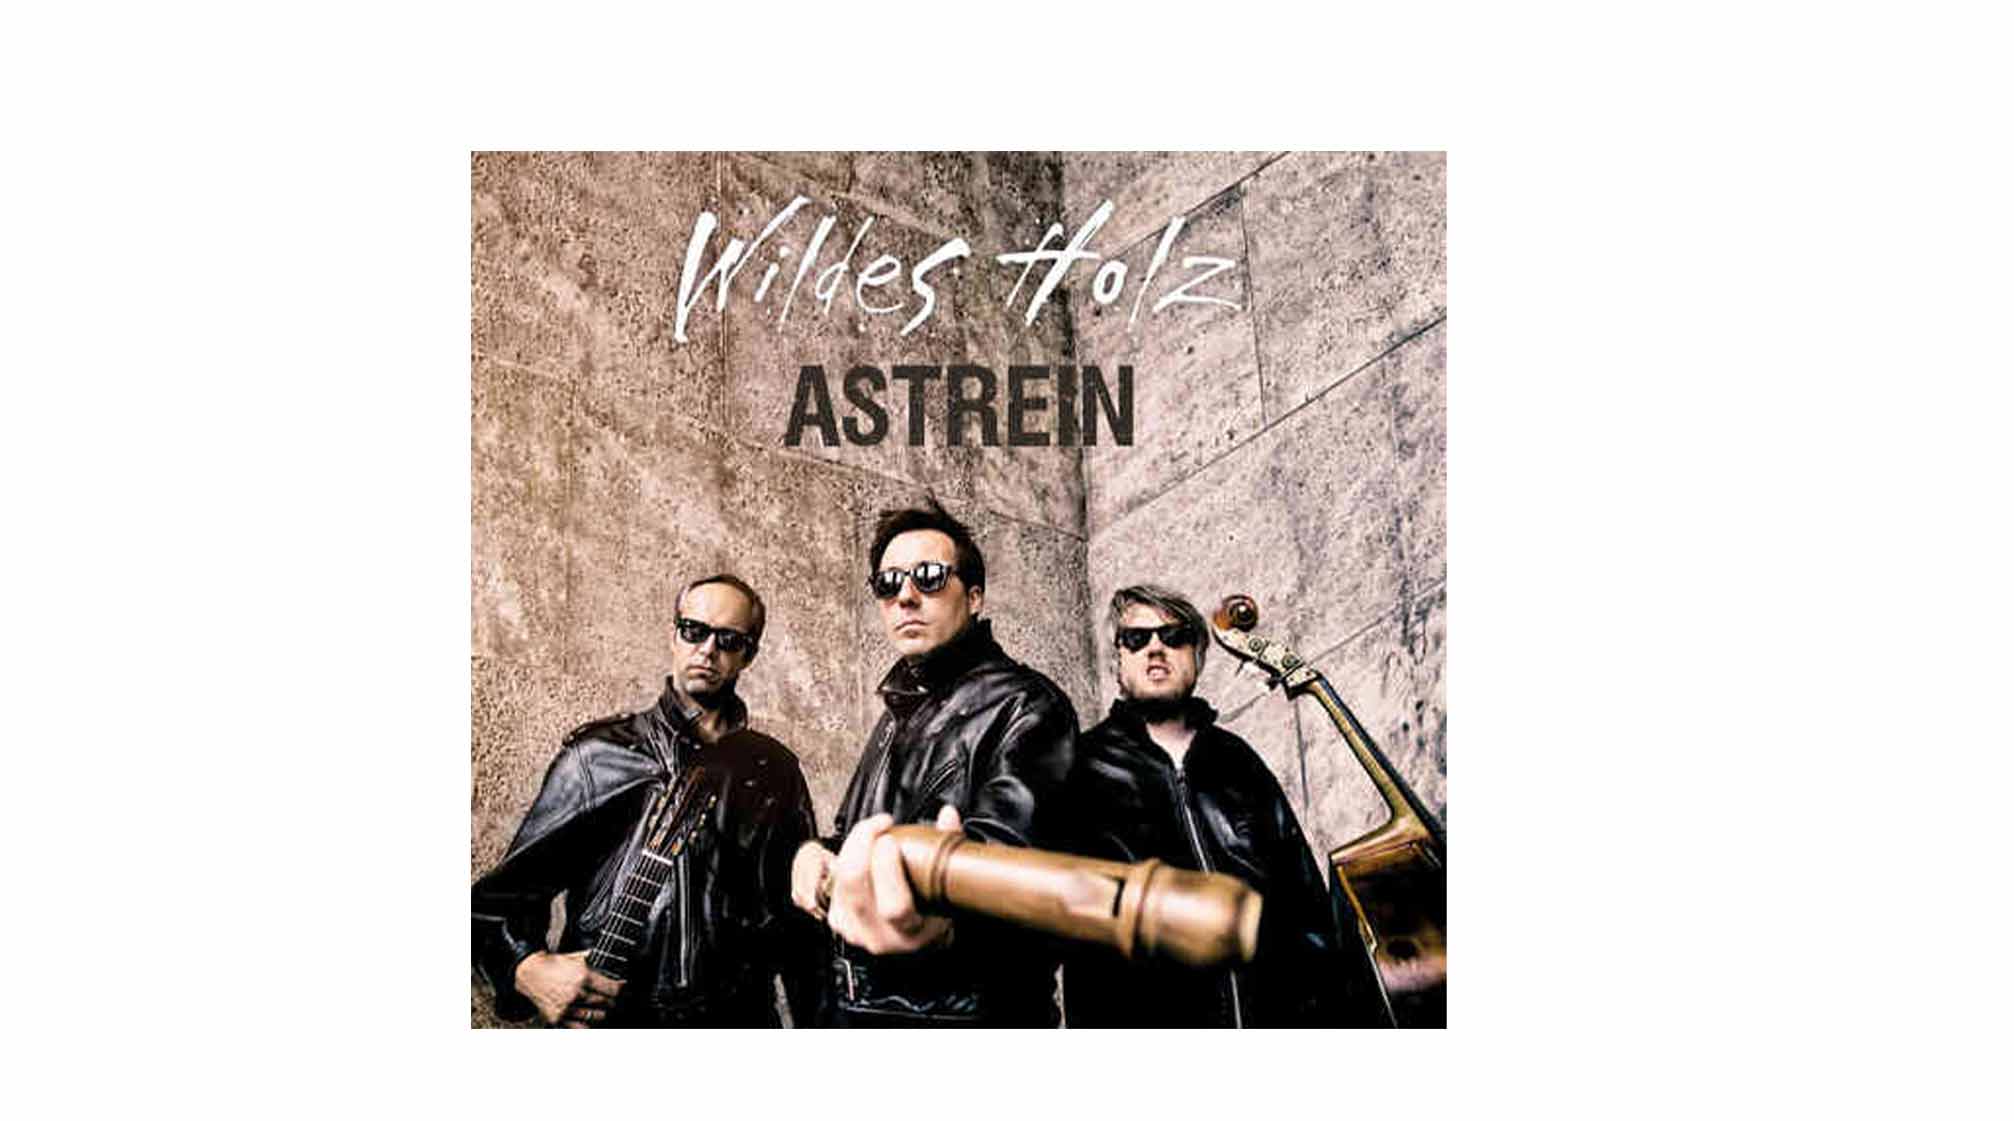 CD: Wildes Holz- Astrein